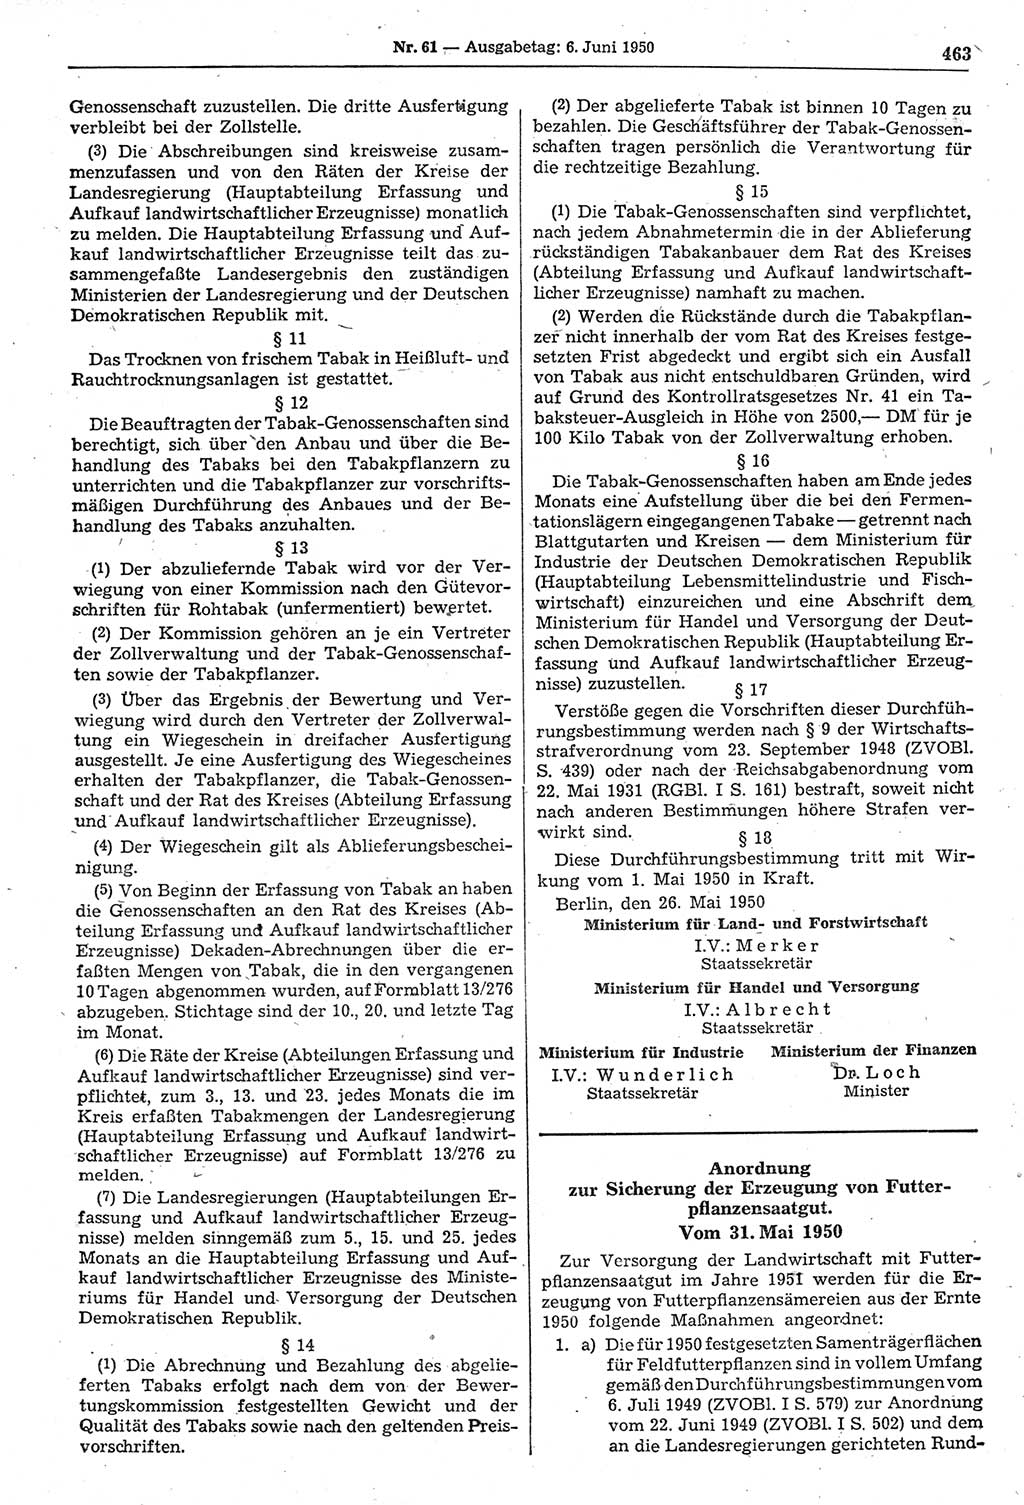 Gesetzblatt (GBl.) der Deutschen Demokratischen Republik (DDR) 1950, Seite 463 (GBl. DDR 1950, S. 463)